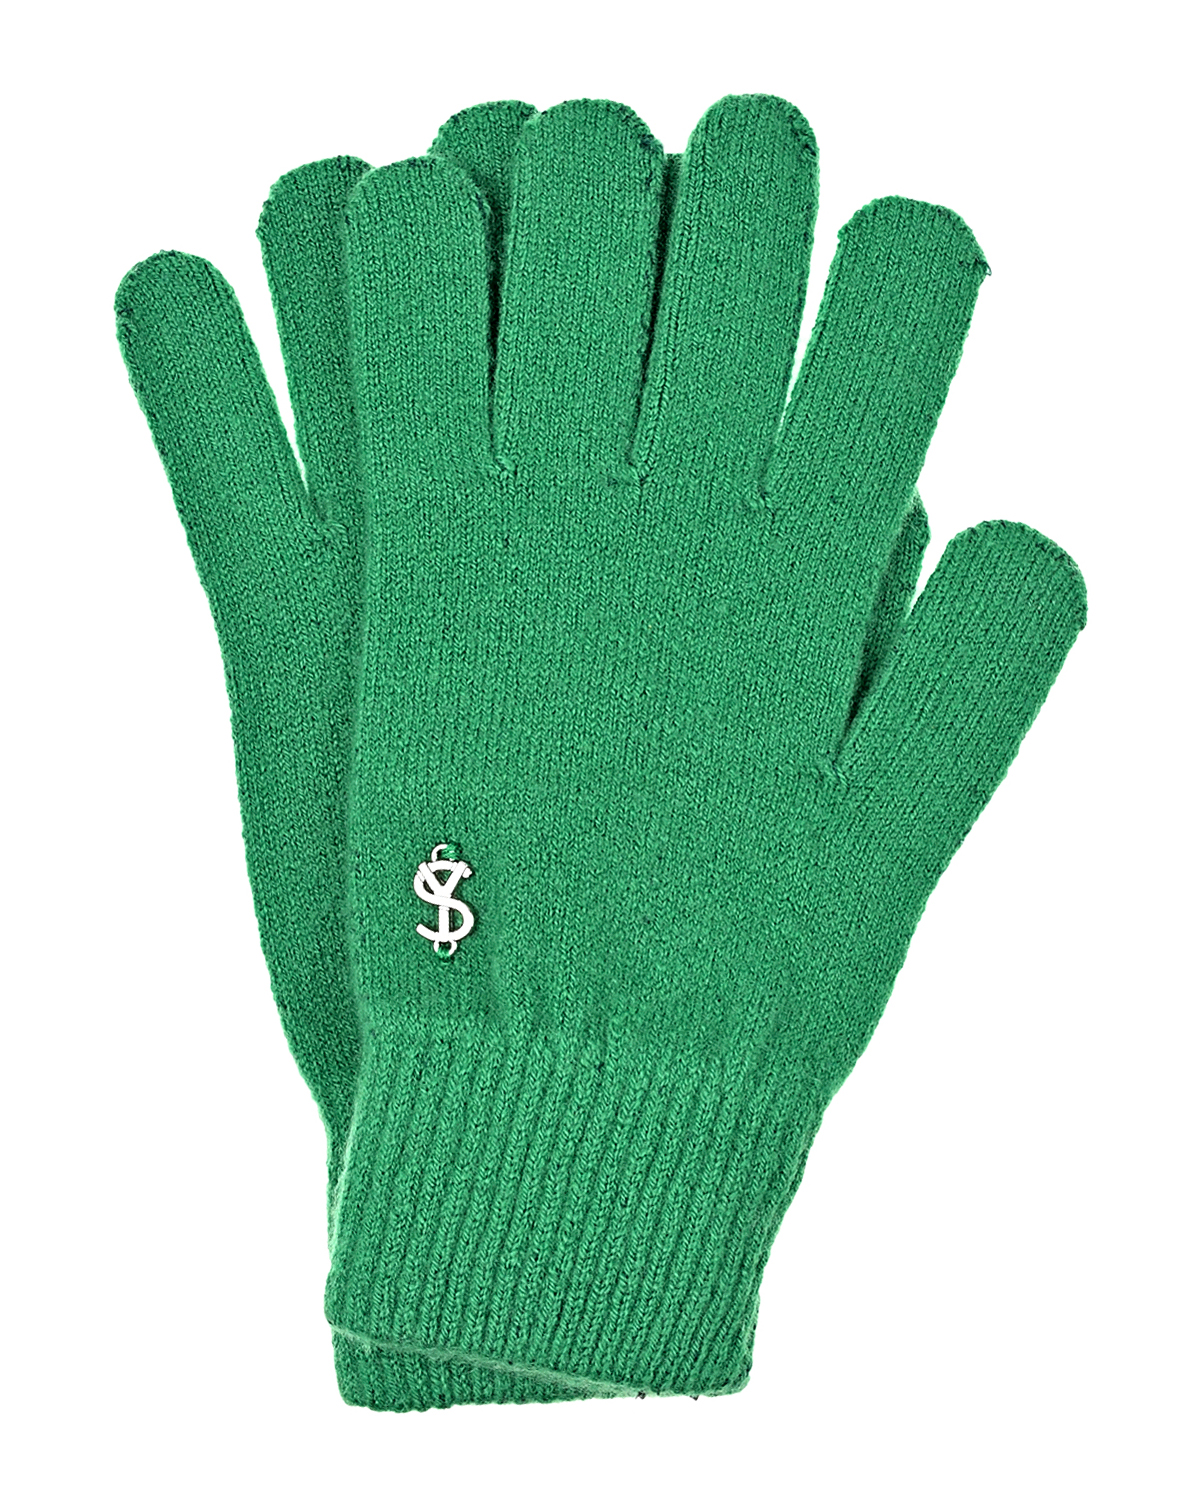 Зеленые перчатки из шерсти и кашемира Yves Salomon, размер unica, цвет зеленый